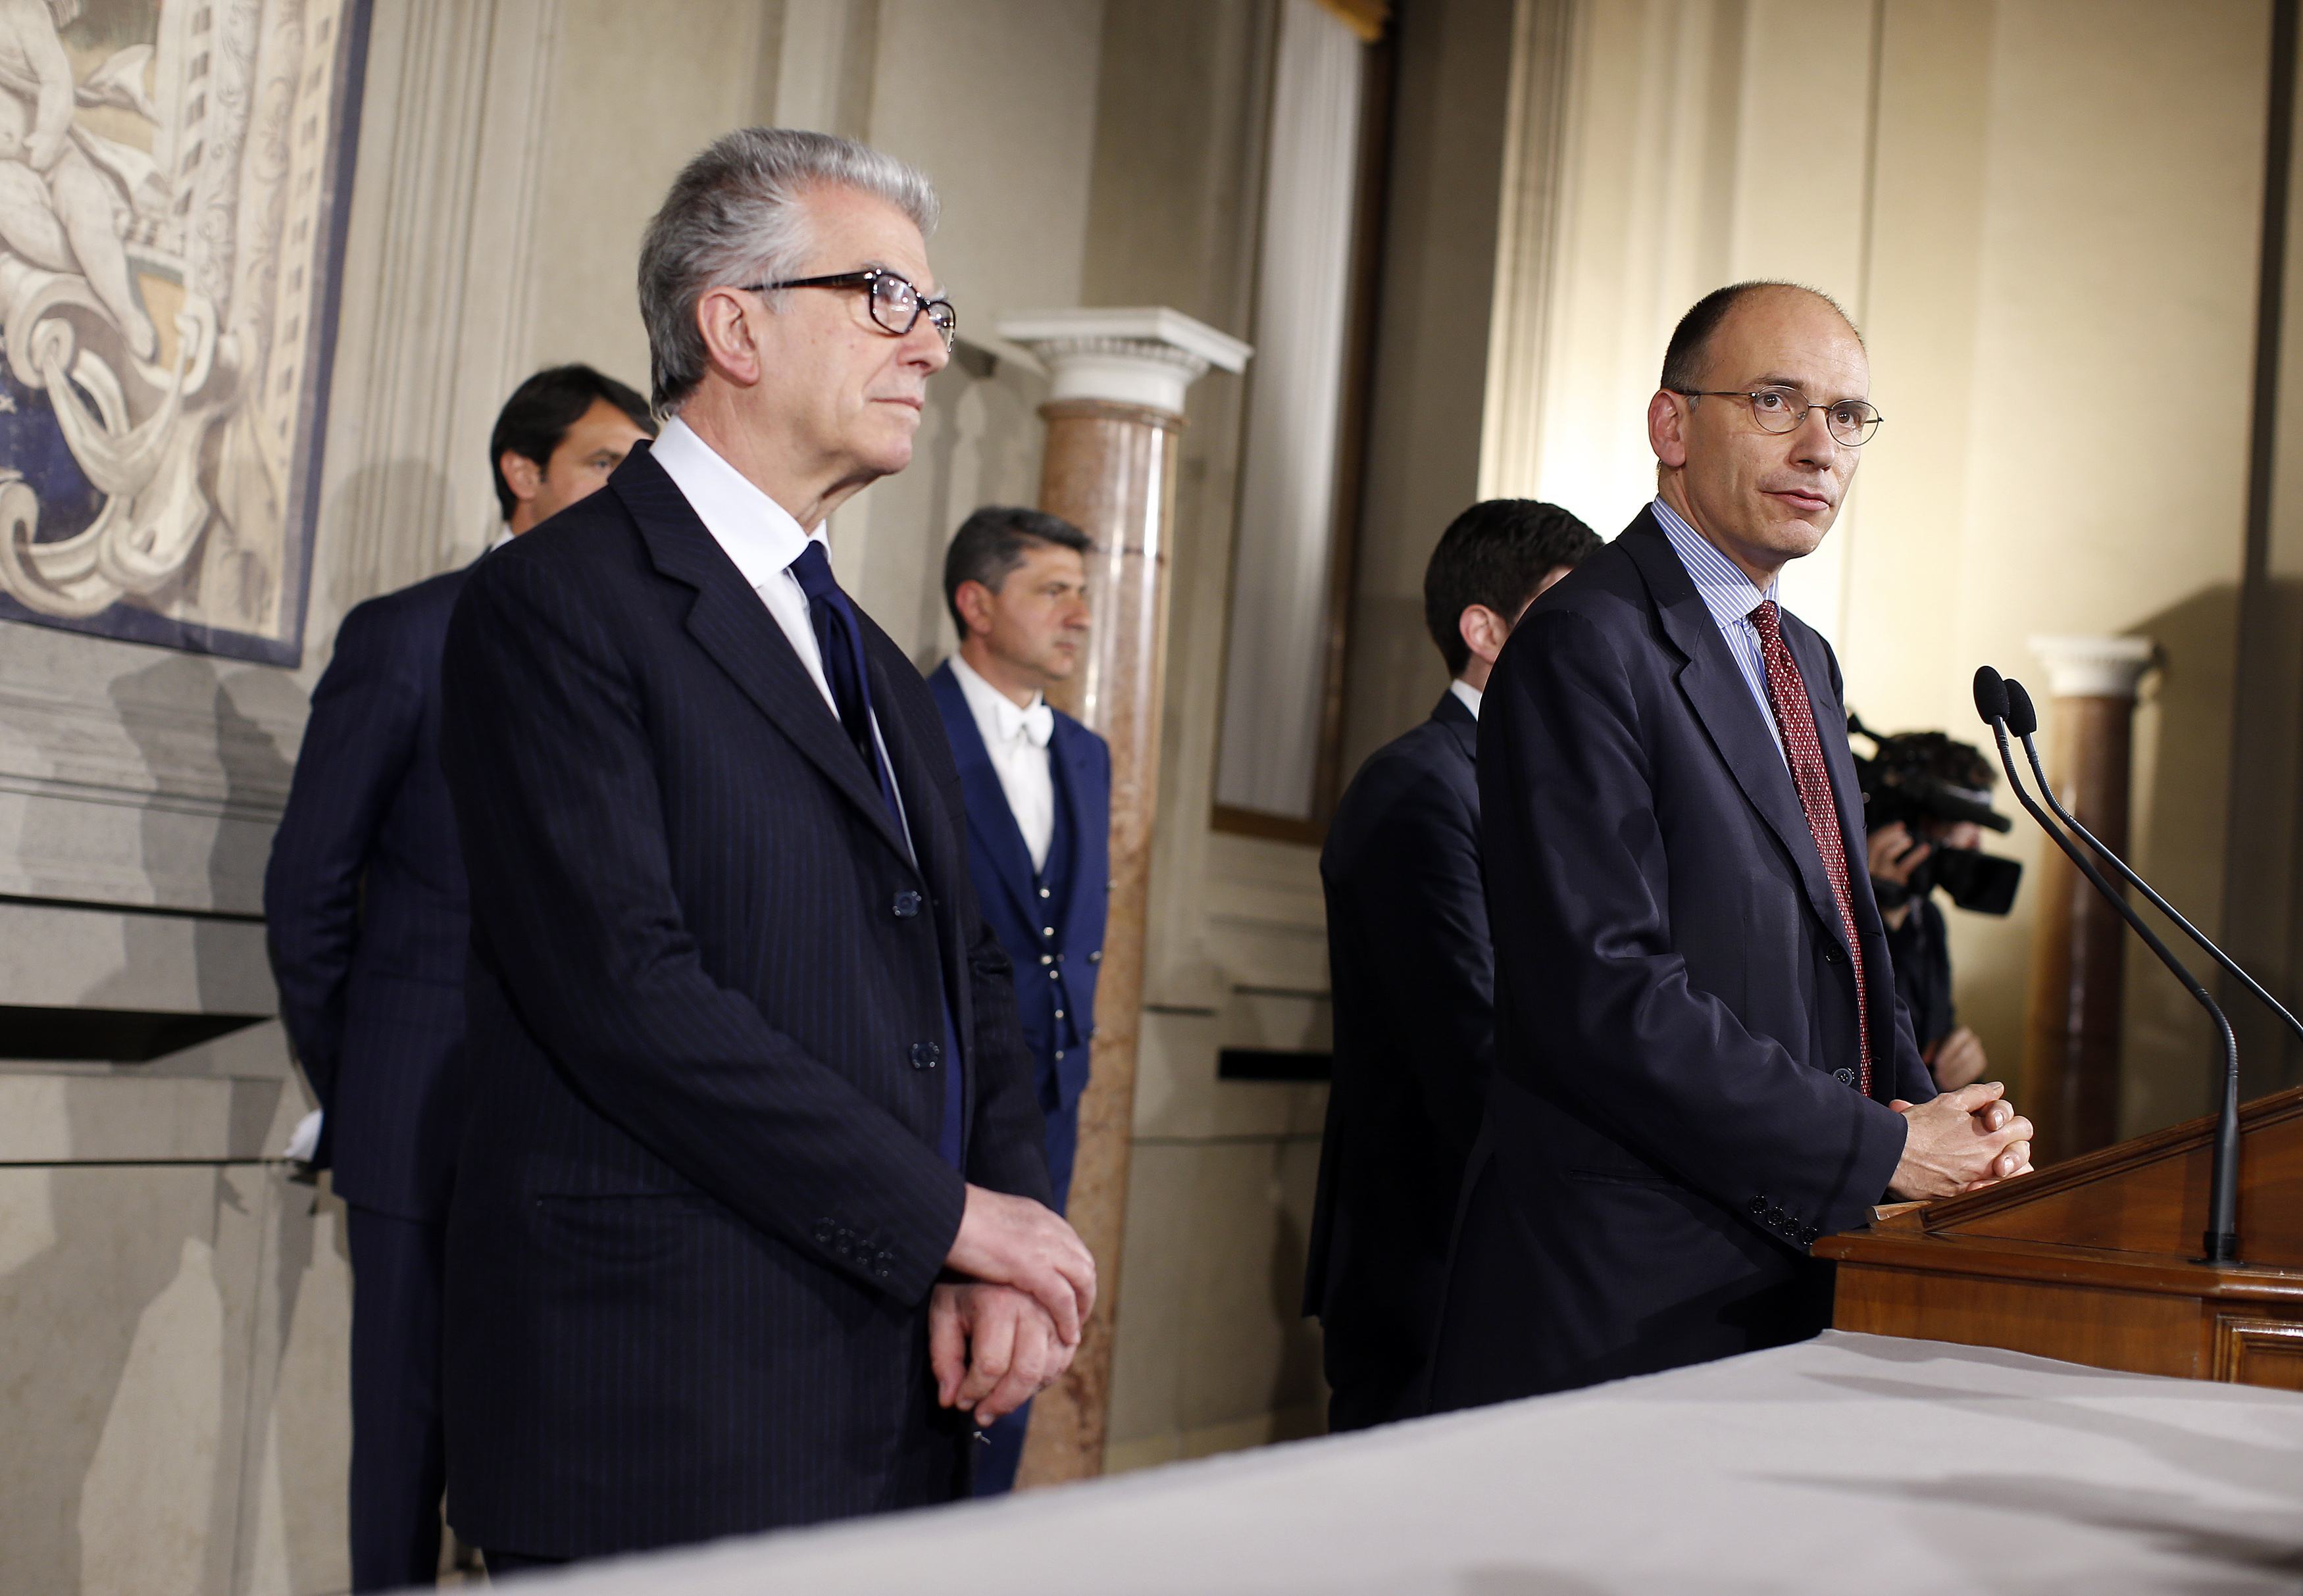 “Να δοθεί τέλος στην ακυβερνησία” – Τι δήλωσε ο εντολοδόχος πρωθυπουργός της Ιταλίας